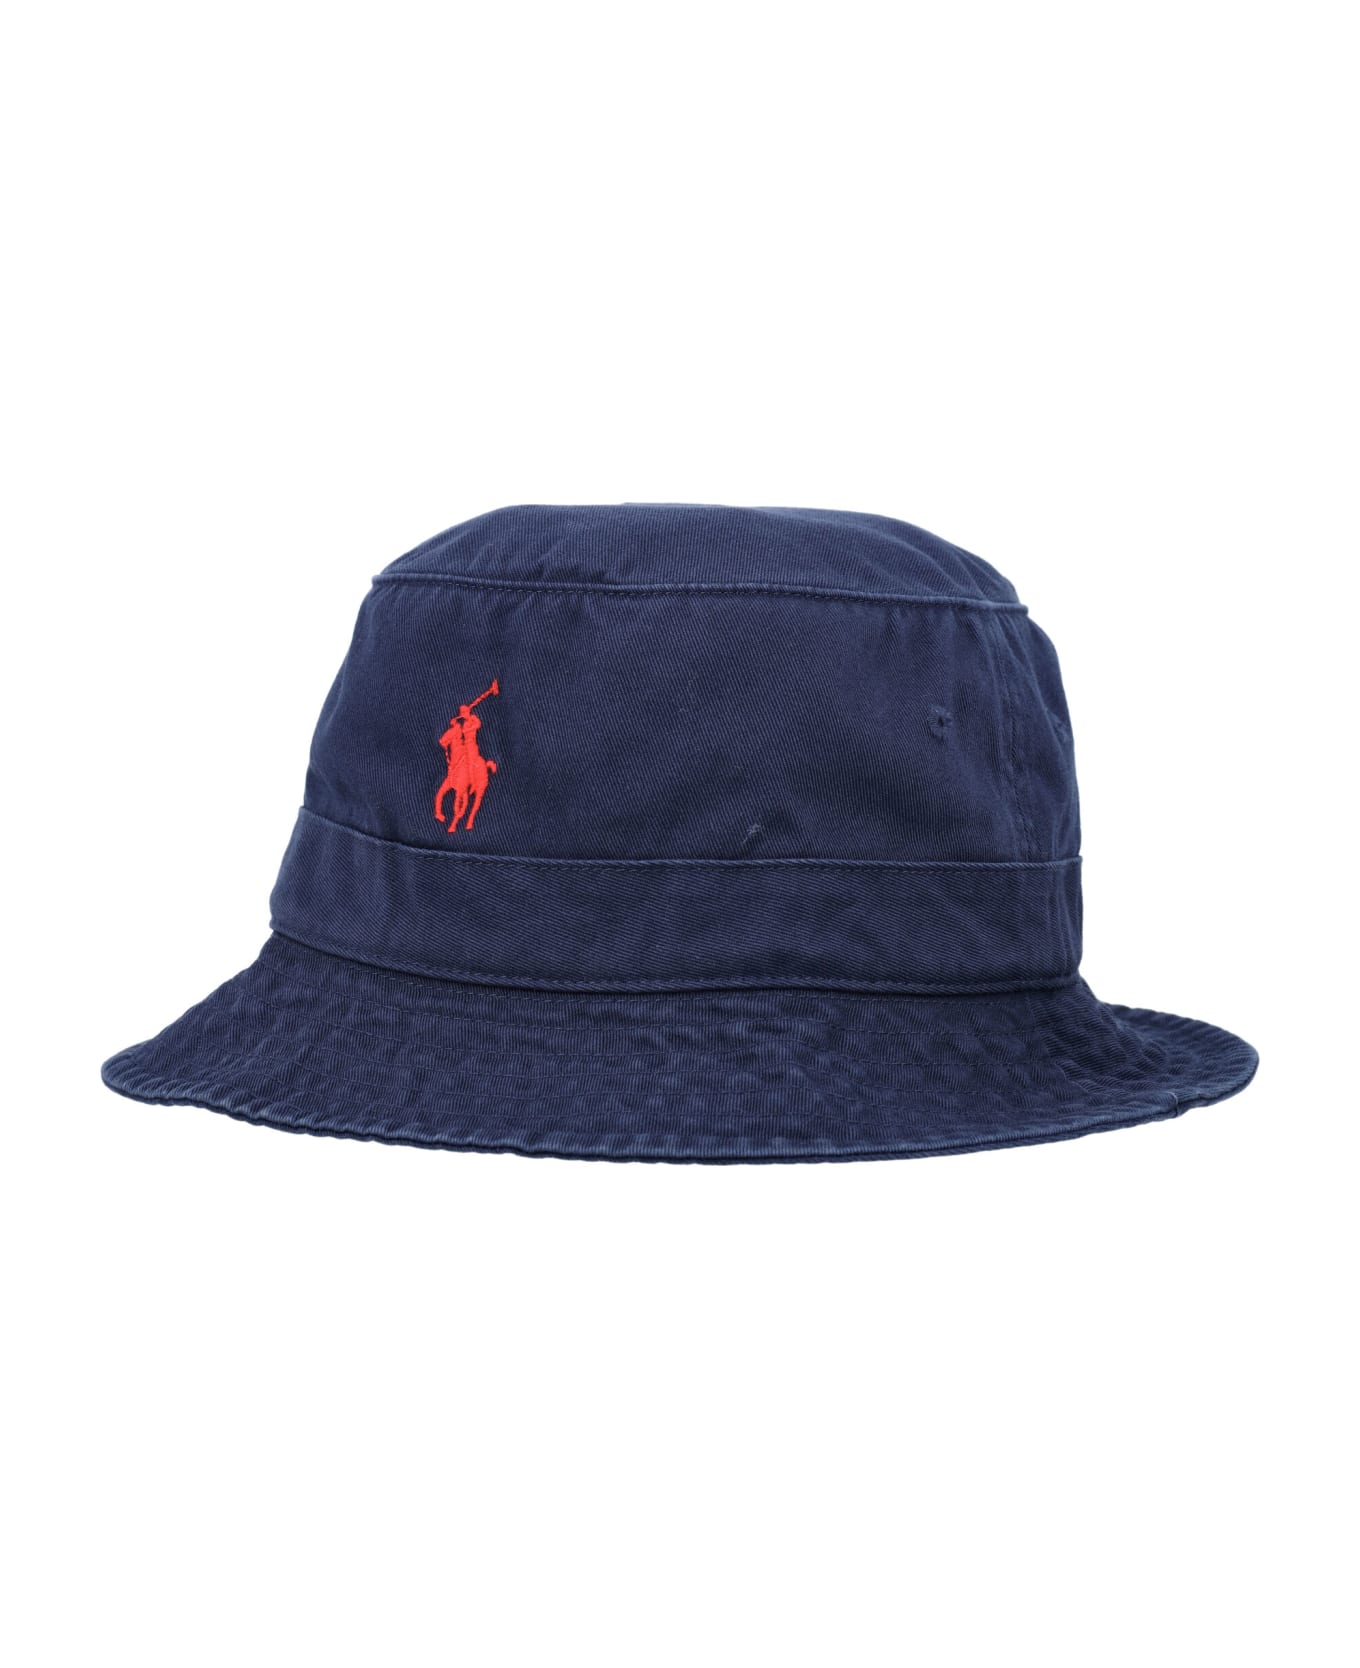 Polo Ralph Lauren Bucket Hat - NAVY 帽子